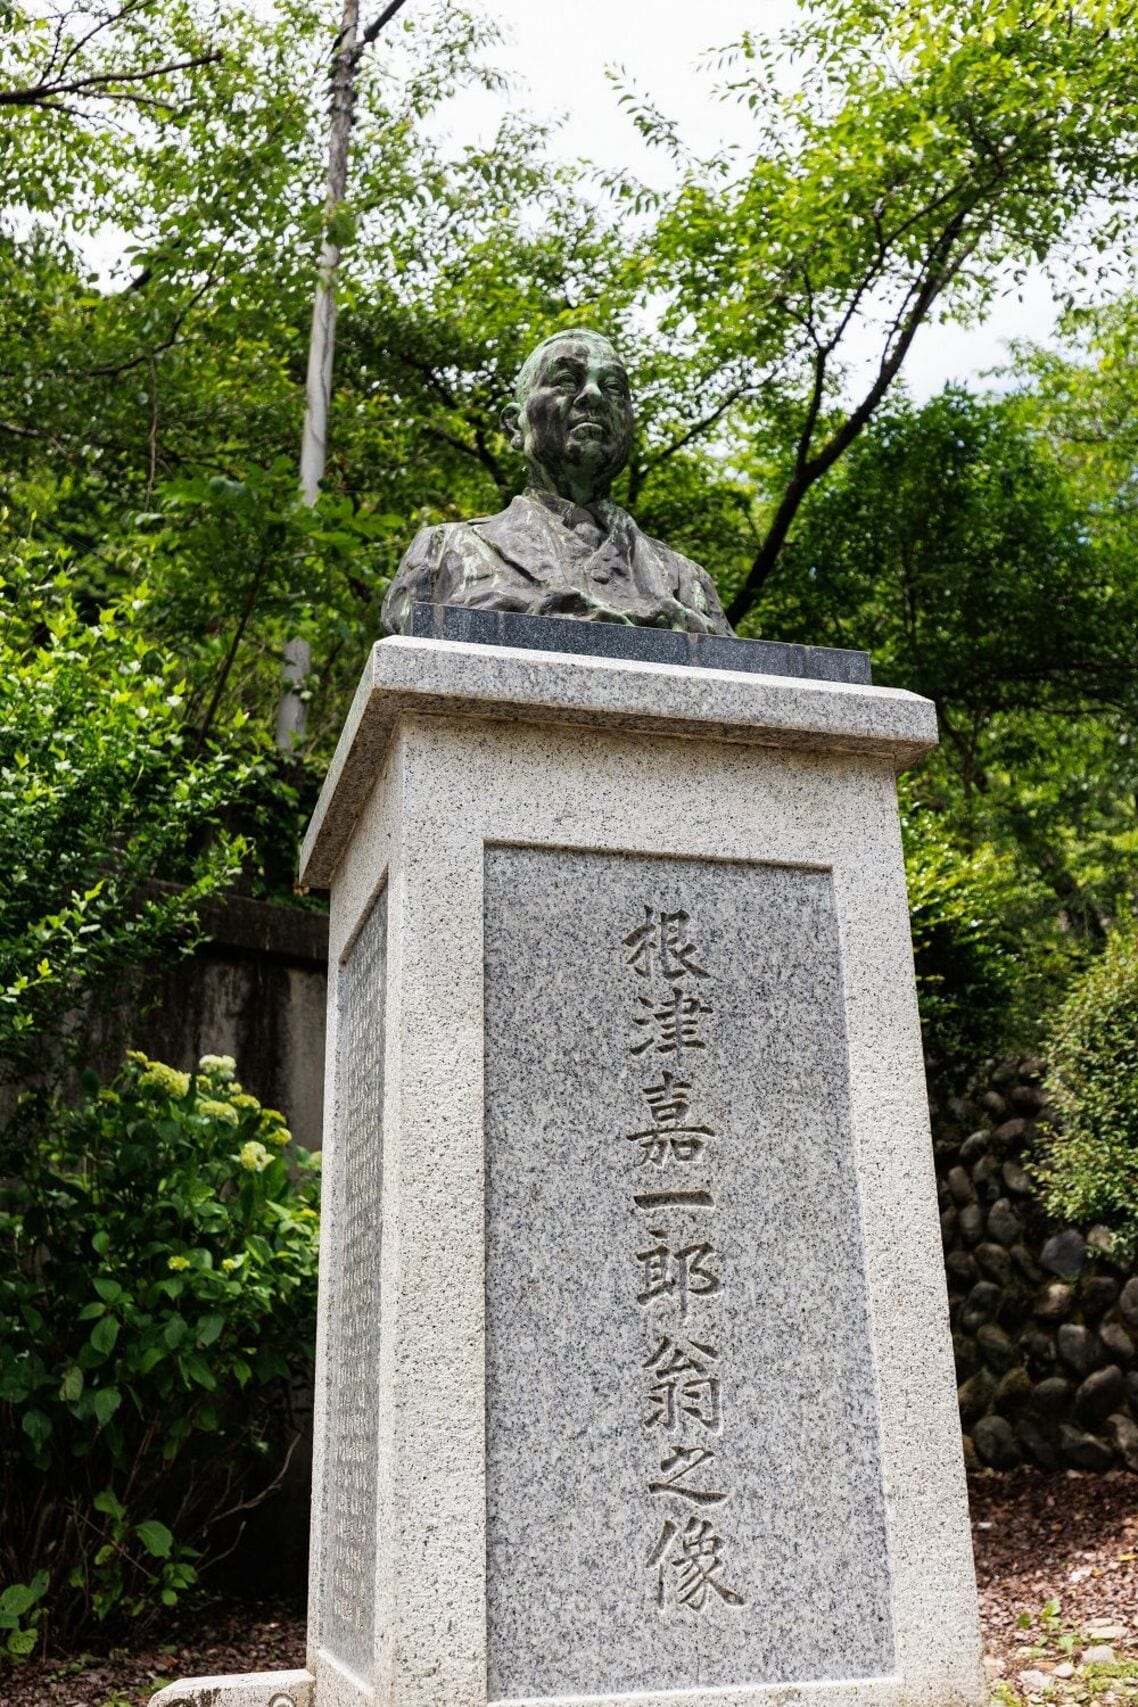 鬼怒川温泉にある護国神社には根津嘉一郎の像